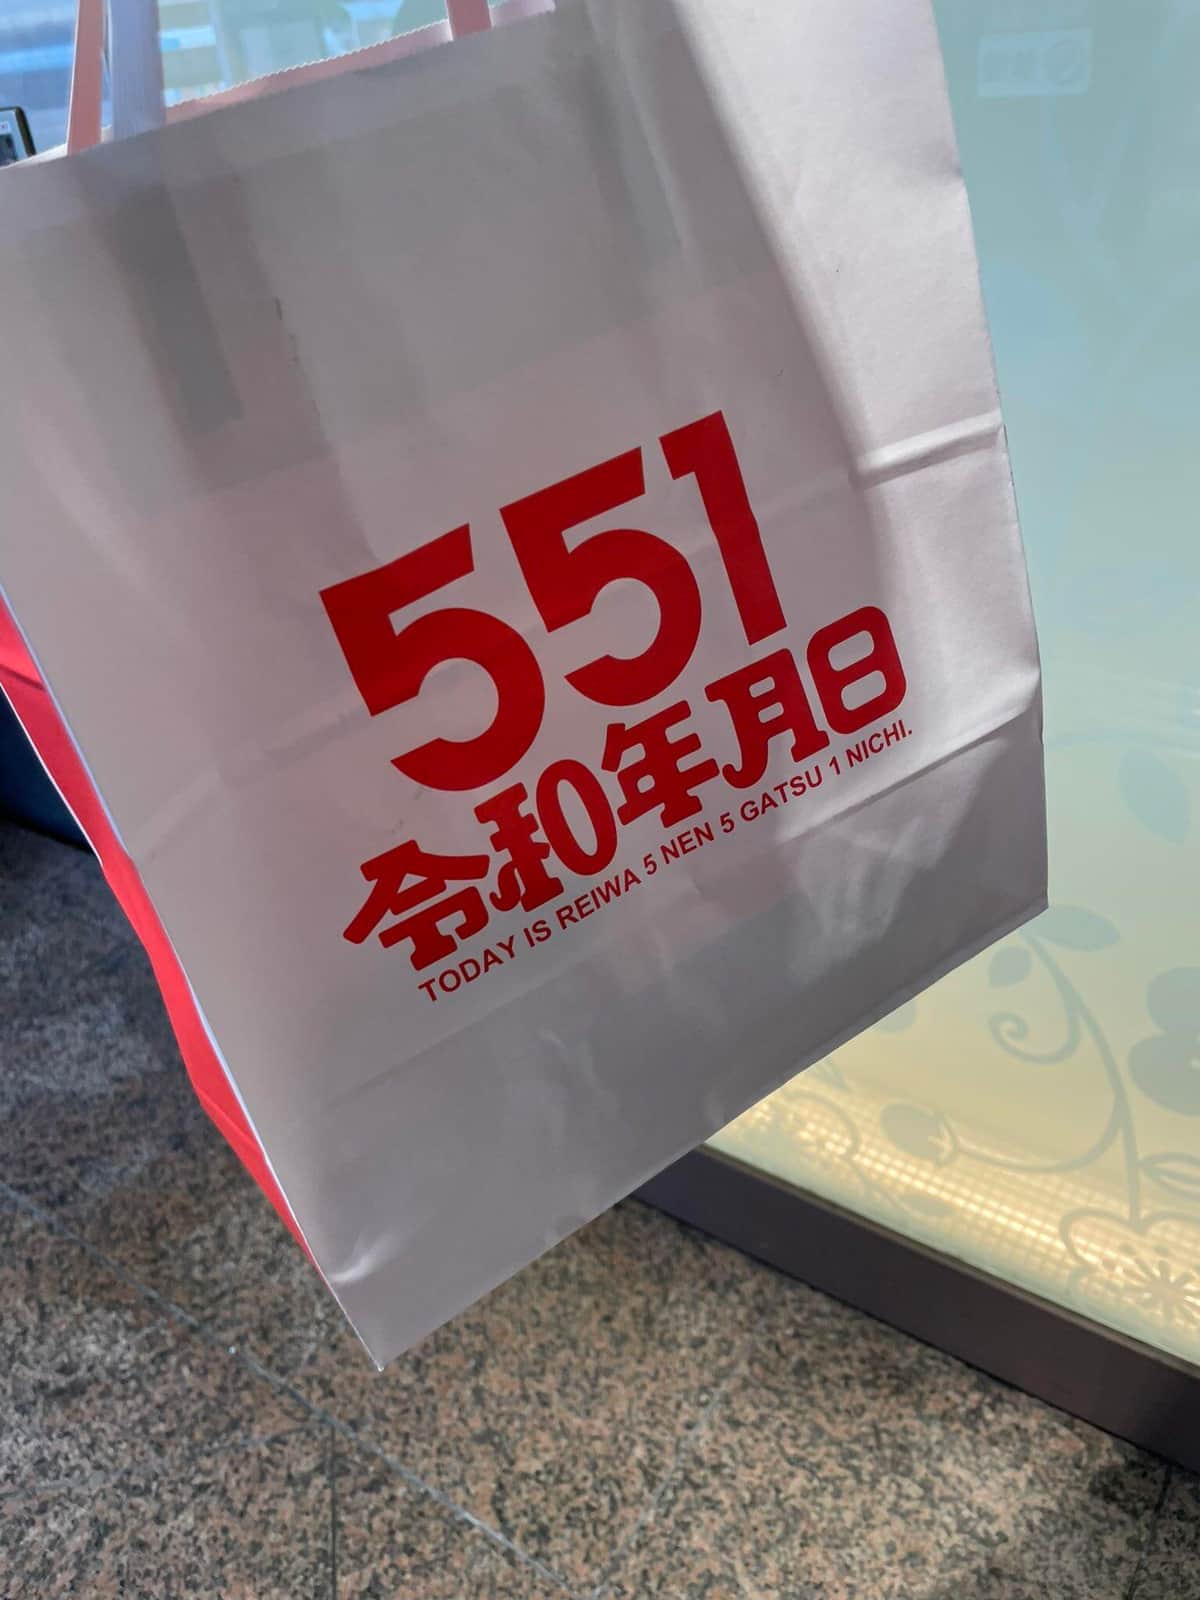 551蓬莱「令和5年5月1日」限定紙袋が話題　「粋な計らい」SNS好評...運営喜び「誰も気づかず終わるかと」